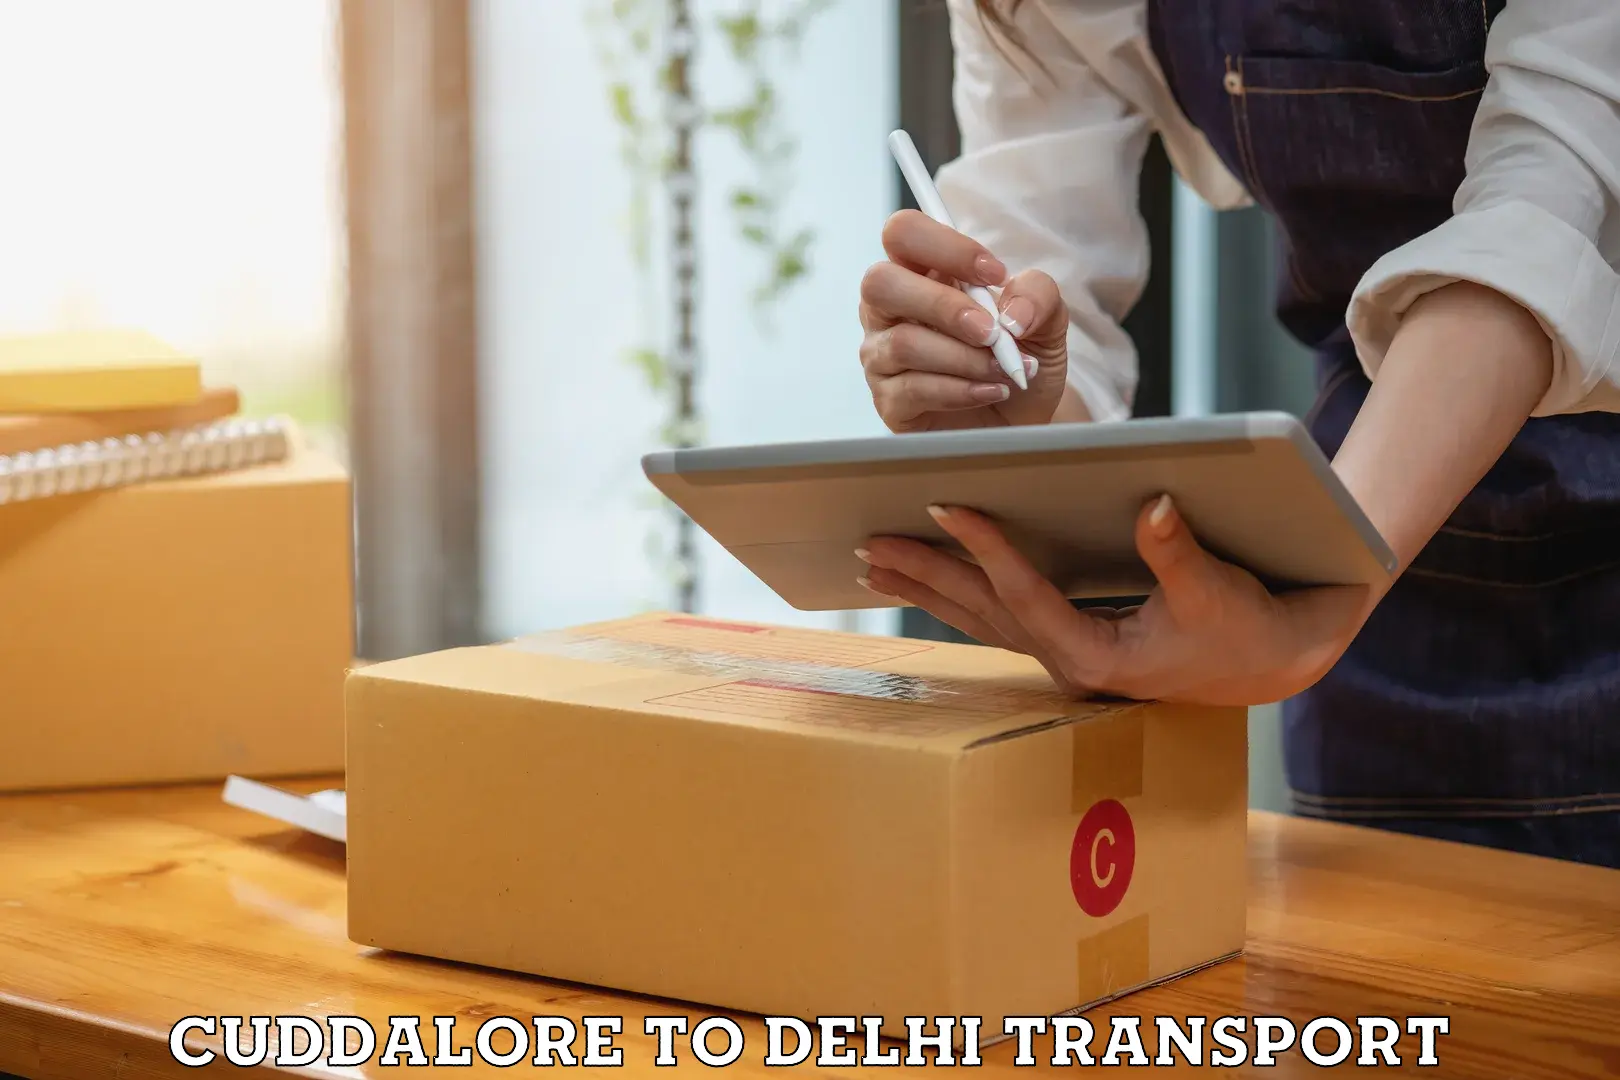 Delivery service Cuddalore to University of Delhi